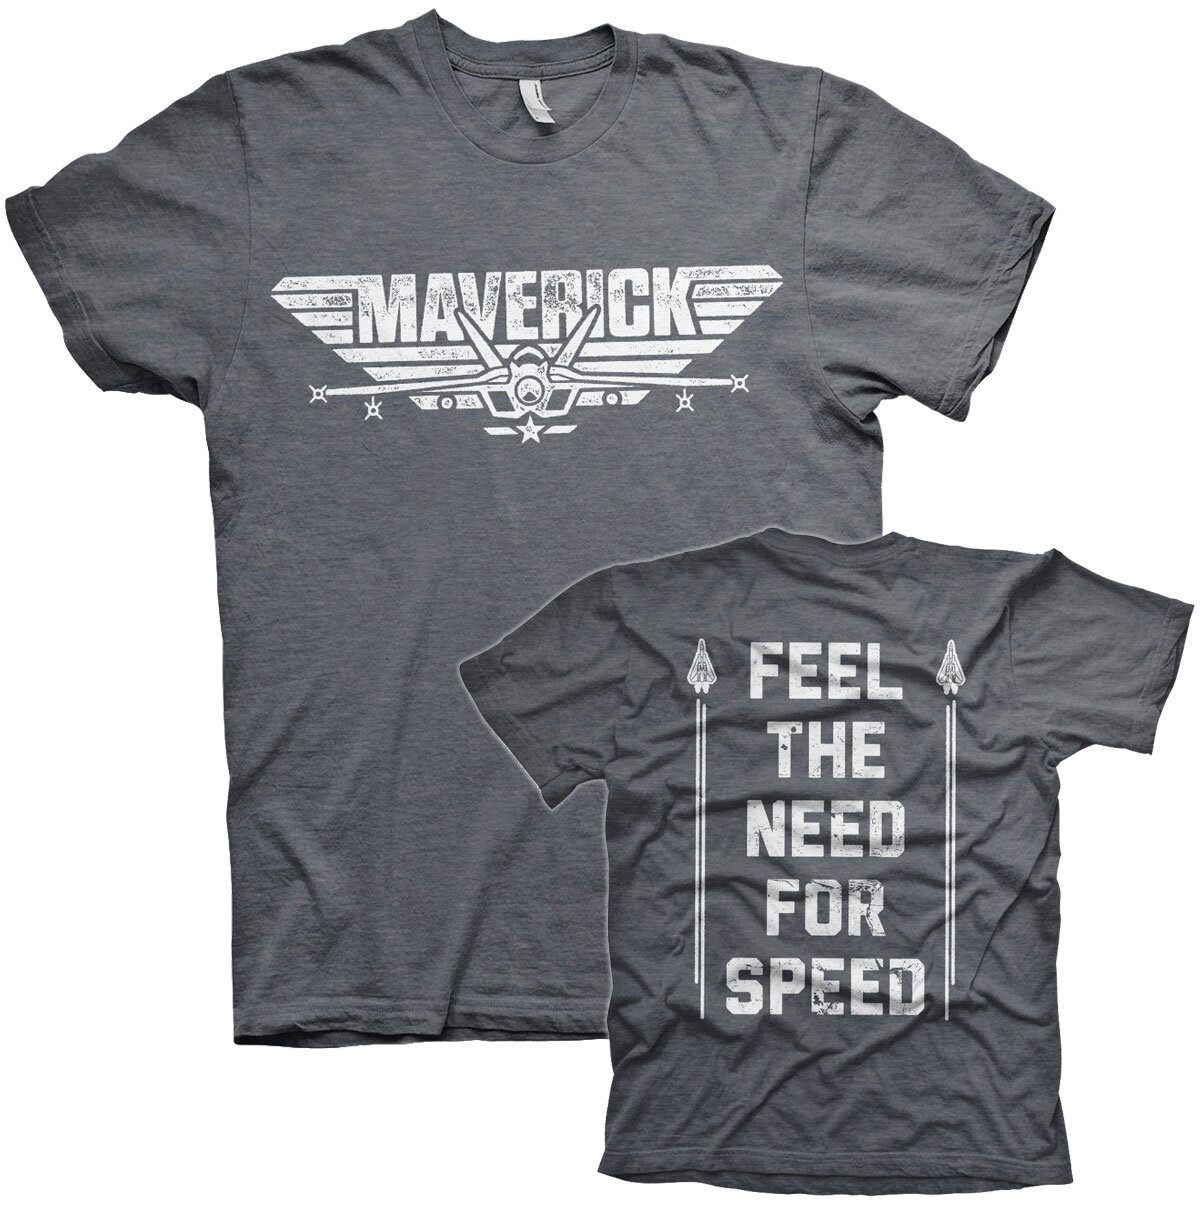 Top Gun Maverick - Need For Speed T-Shirt